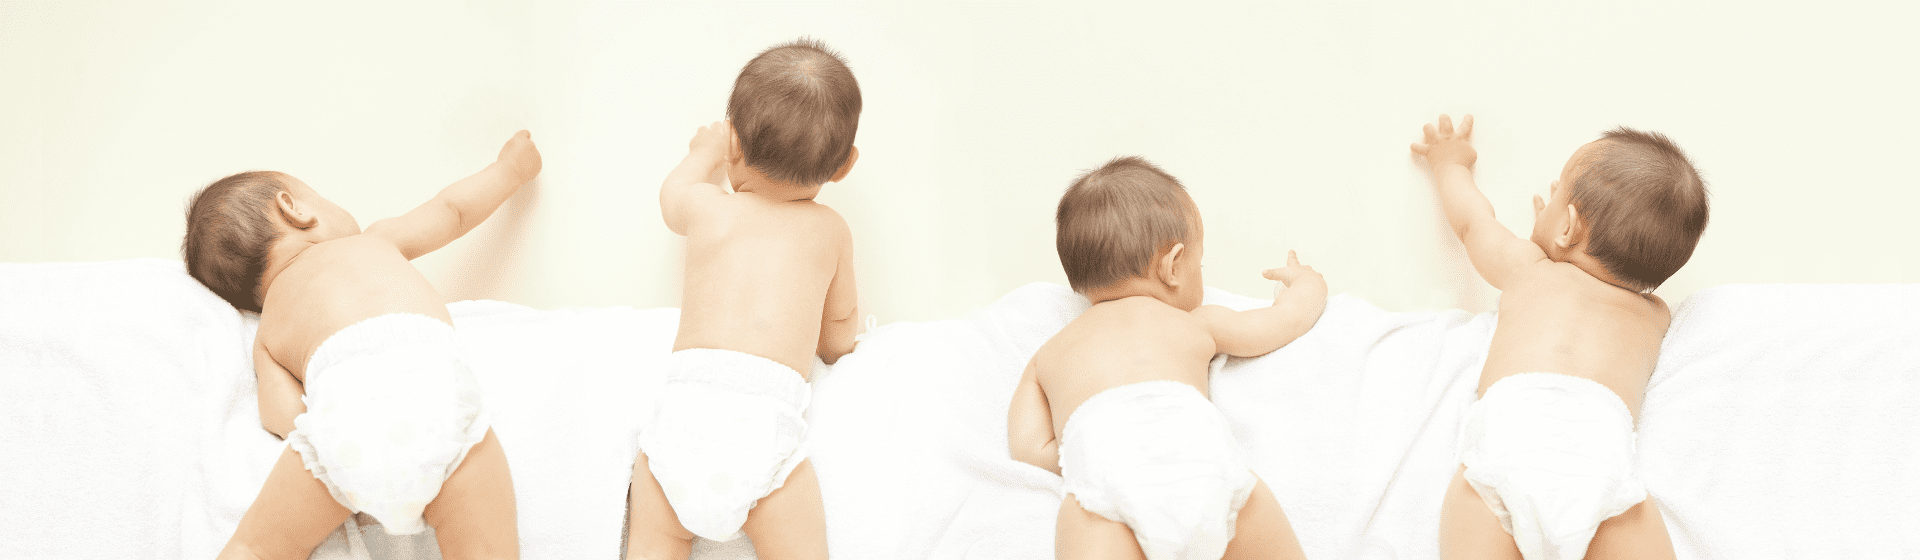 Fralda descartável barata: 7 opções boas e baratas para bebês